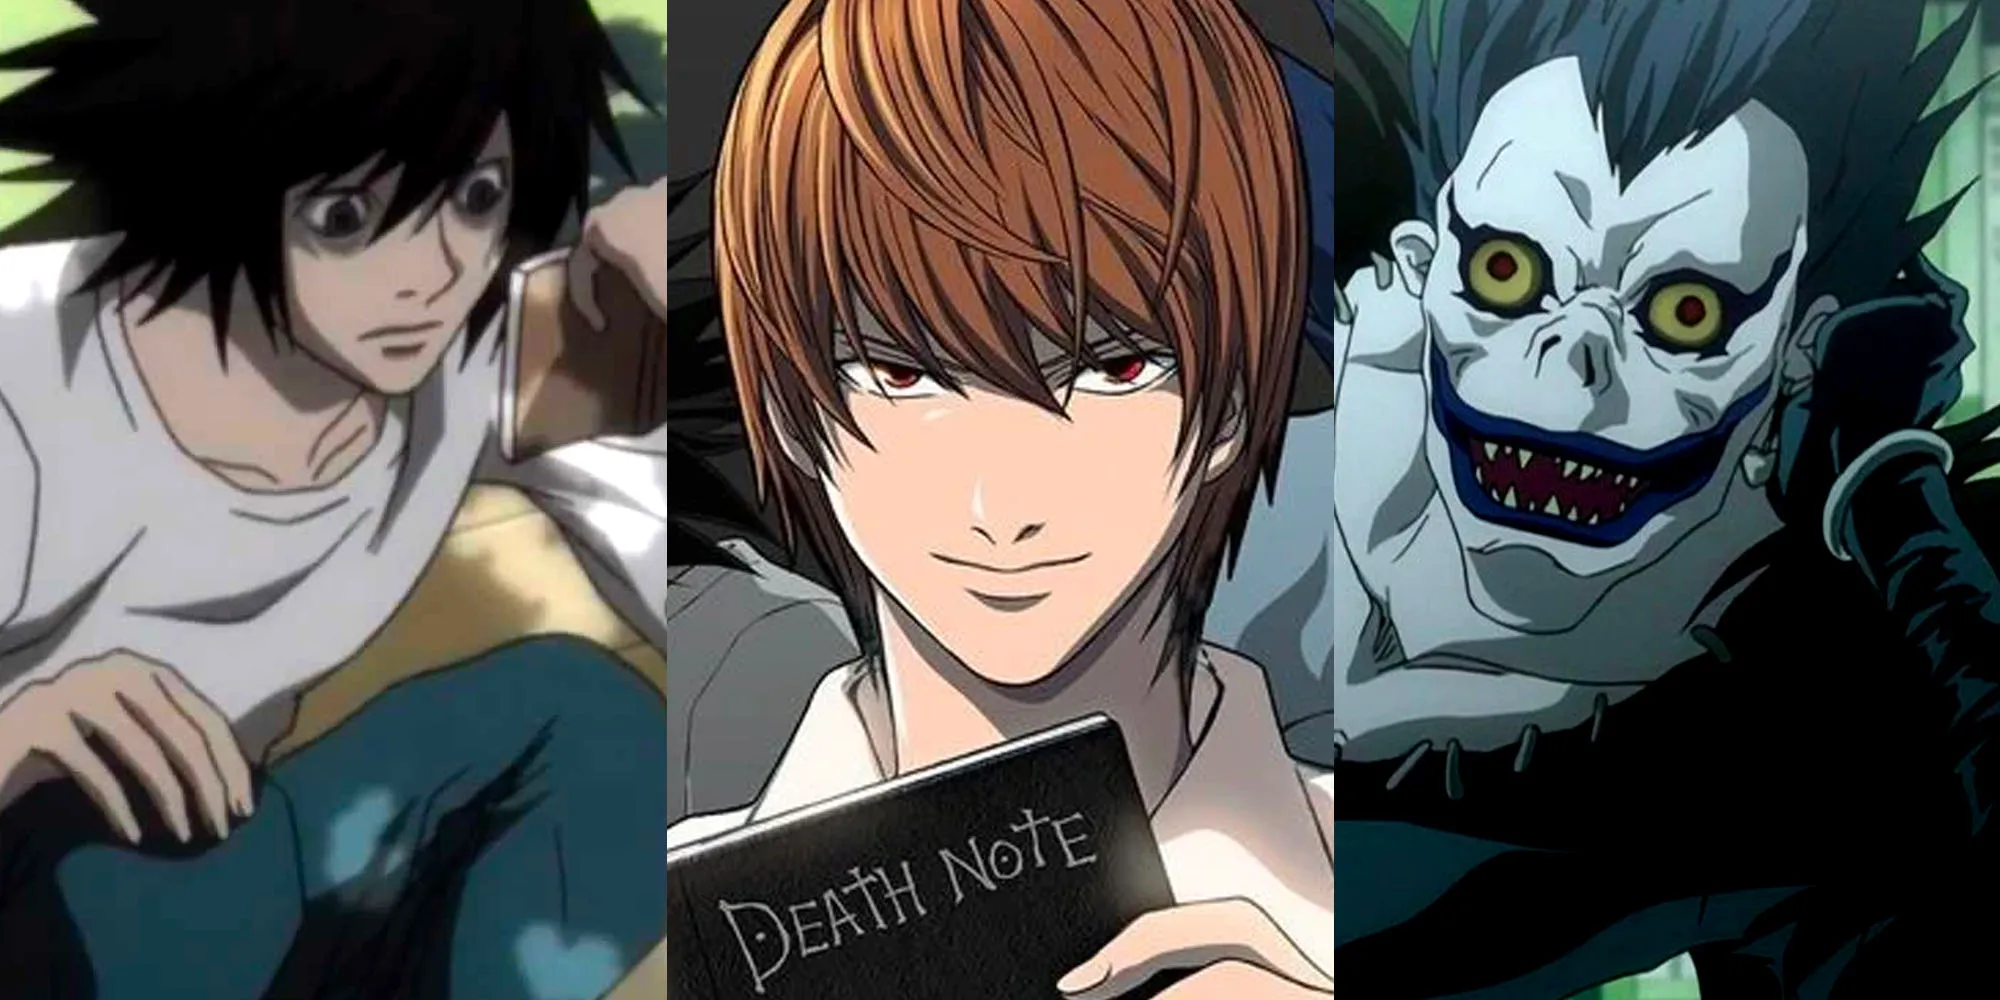 Death Note - Personagens principais, imagem dividida